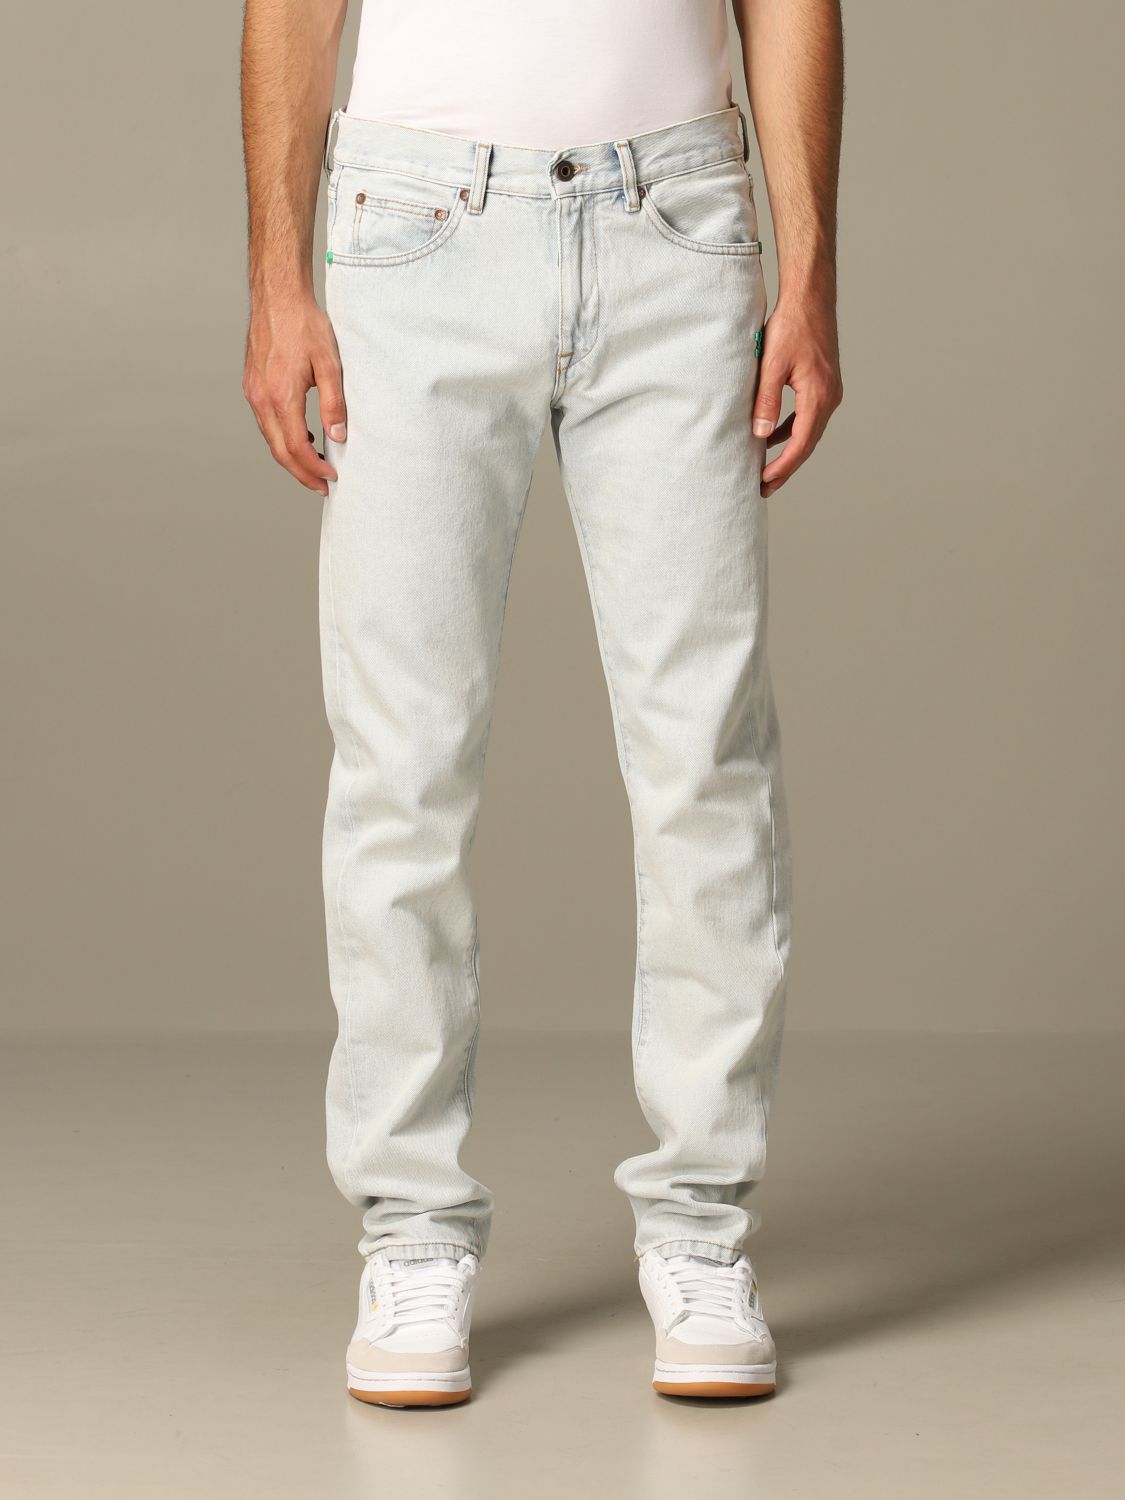 off white jeans men